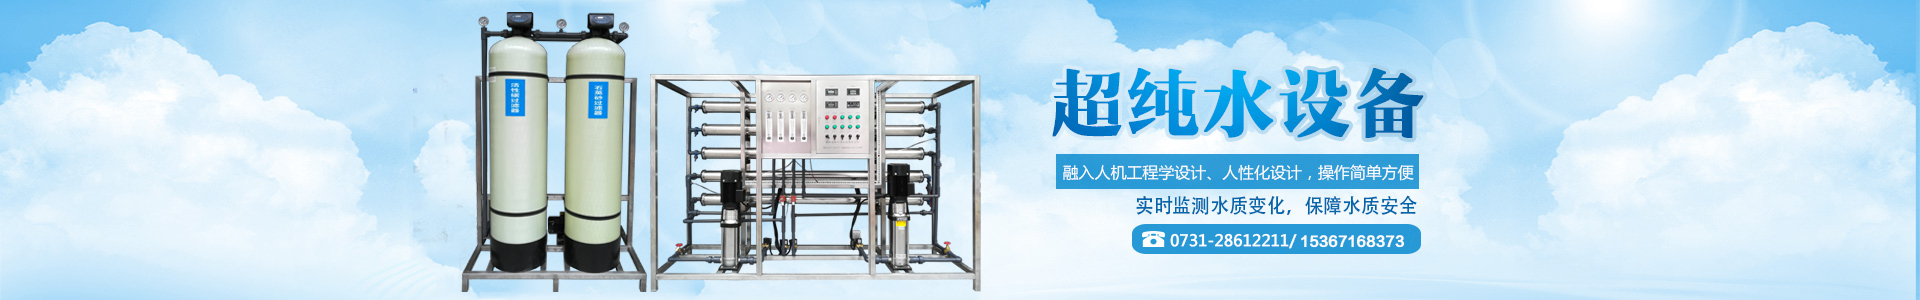 湖南鑫泰环保科技有限公司|水处理设备|工业纯水超纯水设备|软化水设备|反渗透纯水设备